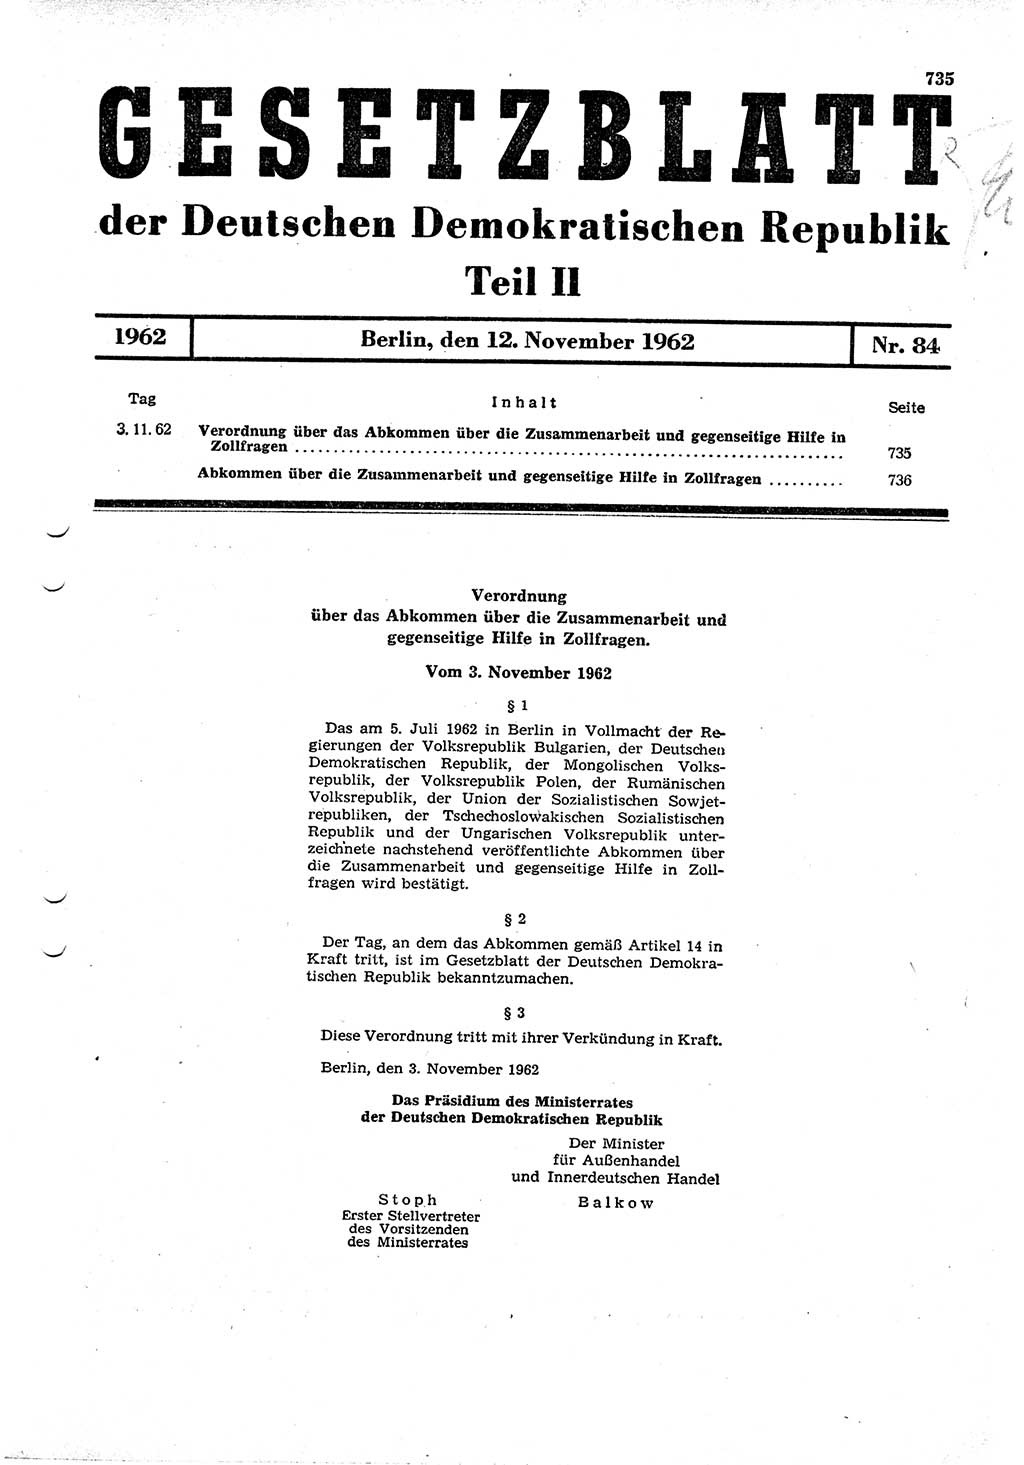 Gesetzblatt (GBl.) der Deutschen Demokratischen Republik (DDR) Teil ⅠⅠ 1962, Seite 735 (GBl. DDR ⅠⅠ 1962, S. 735)